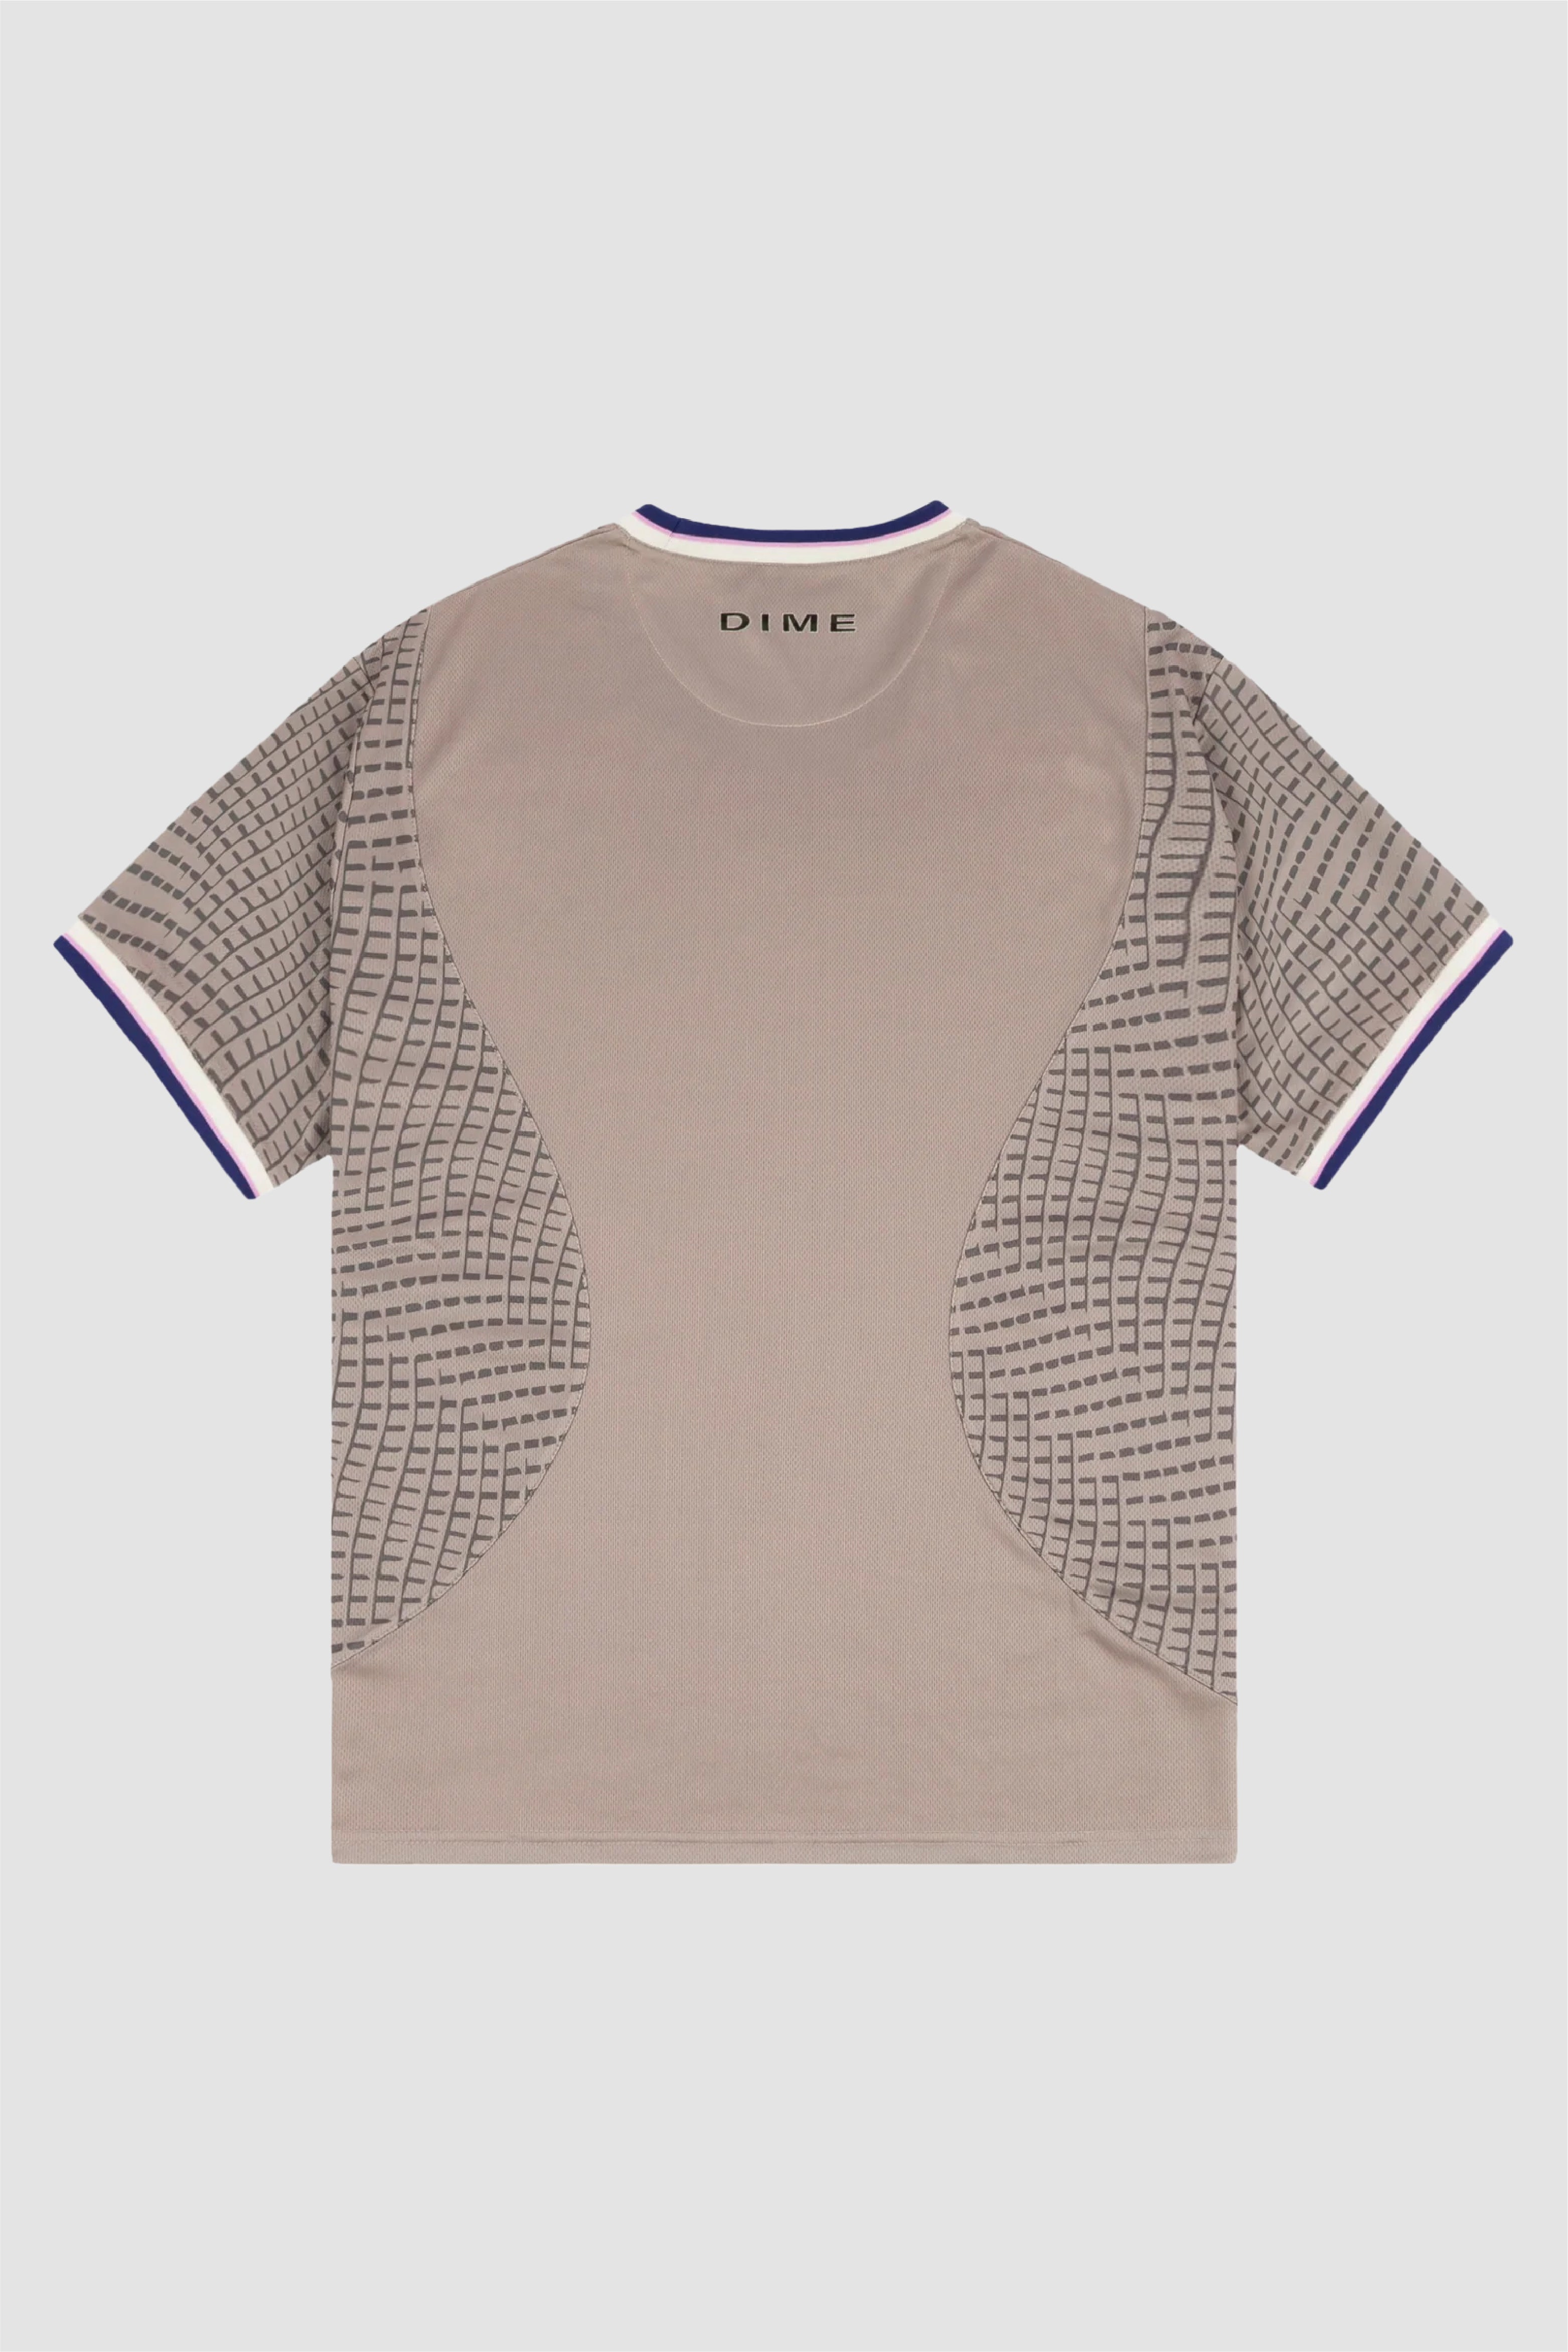 Selectshop FRAME - DIME Athletic Jersey T-Shirts Concept Store Dubai